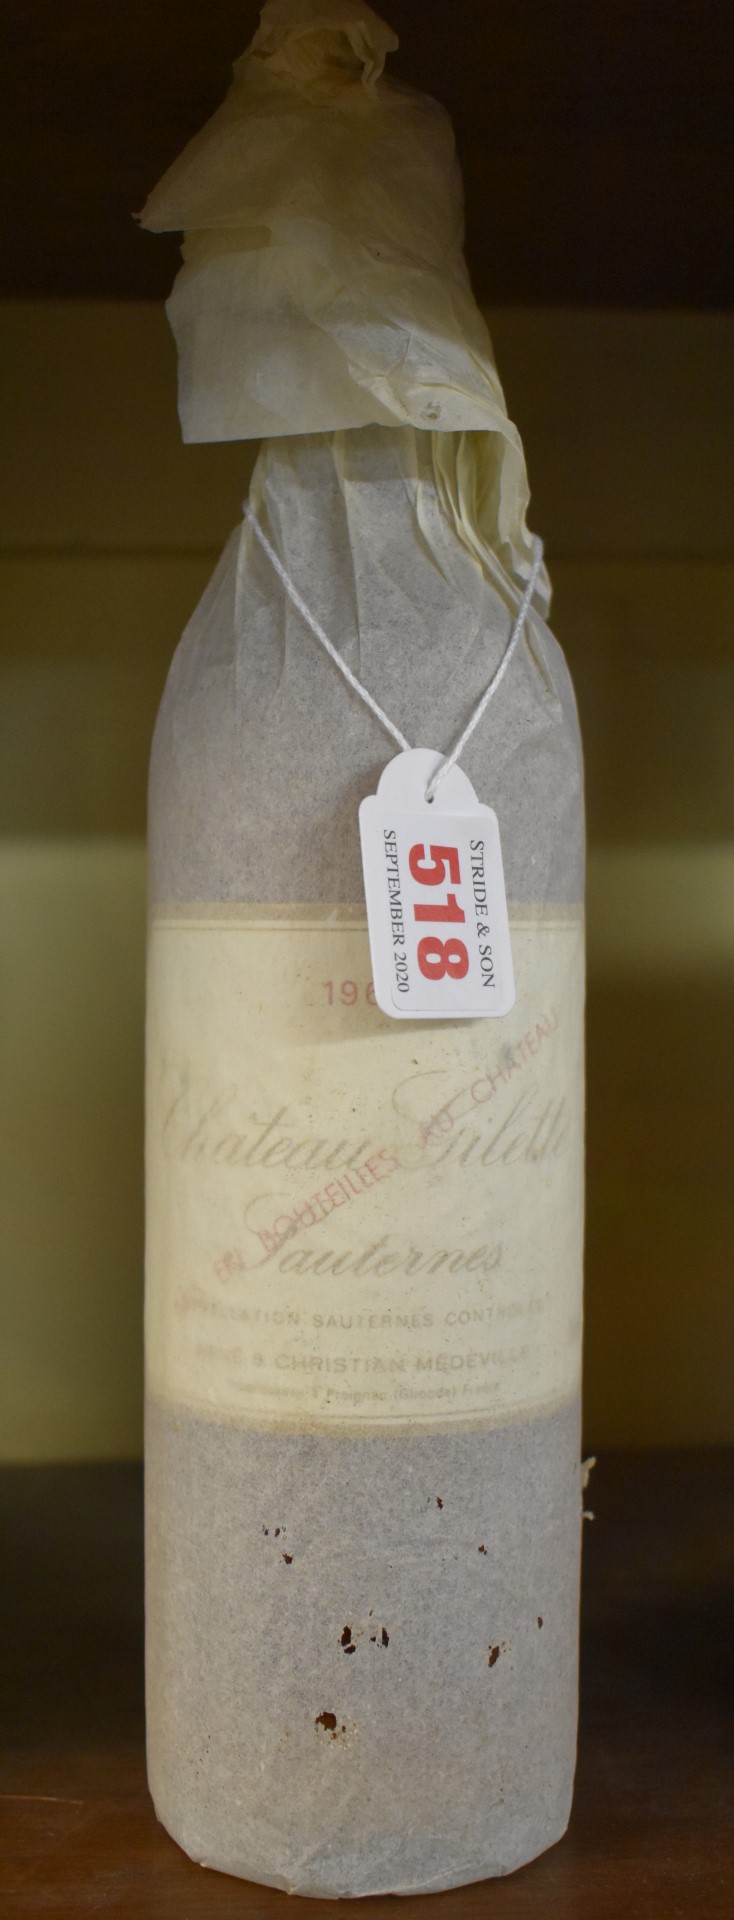 A 75cl bottle of Chateau Gilette, 1962, Sauternes. (1)